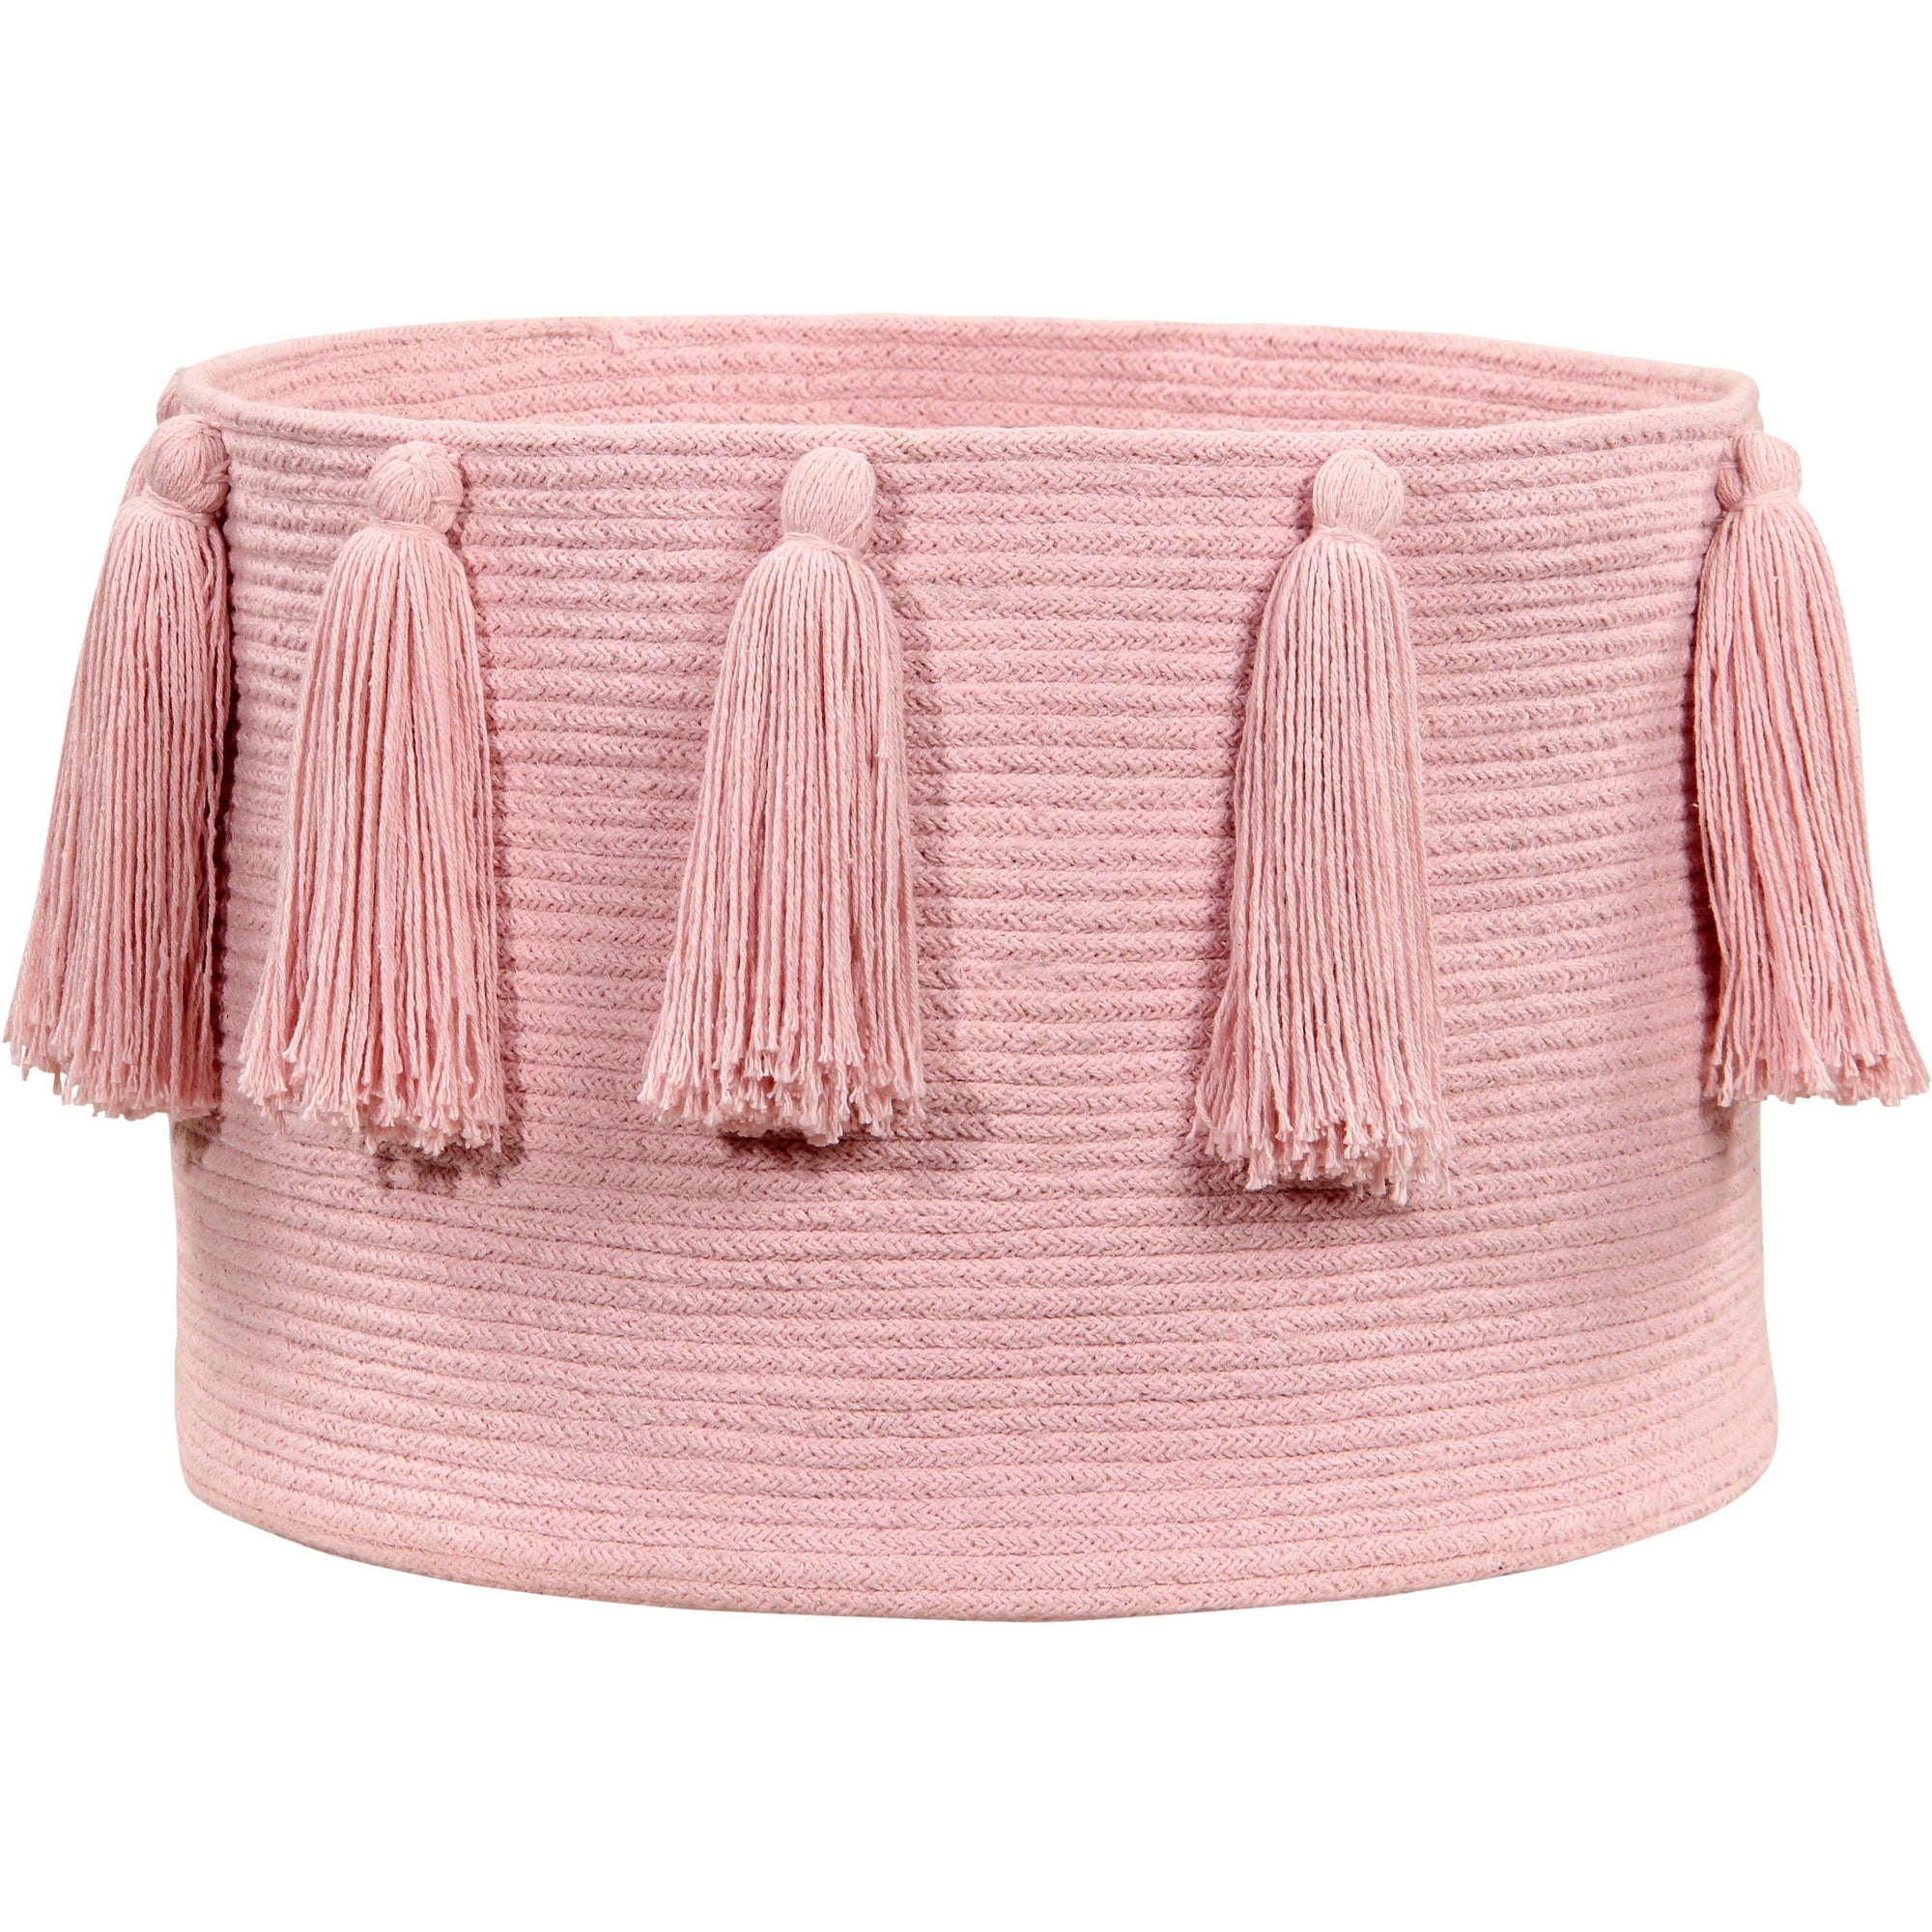 Rugs by Roo | Lorena Canals Tassels Pink Basket-BSK-TAS-PK